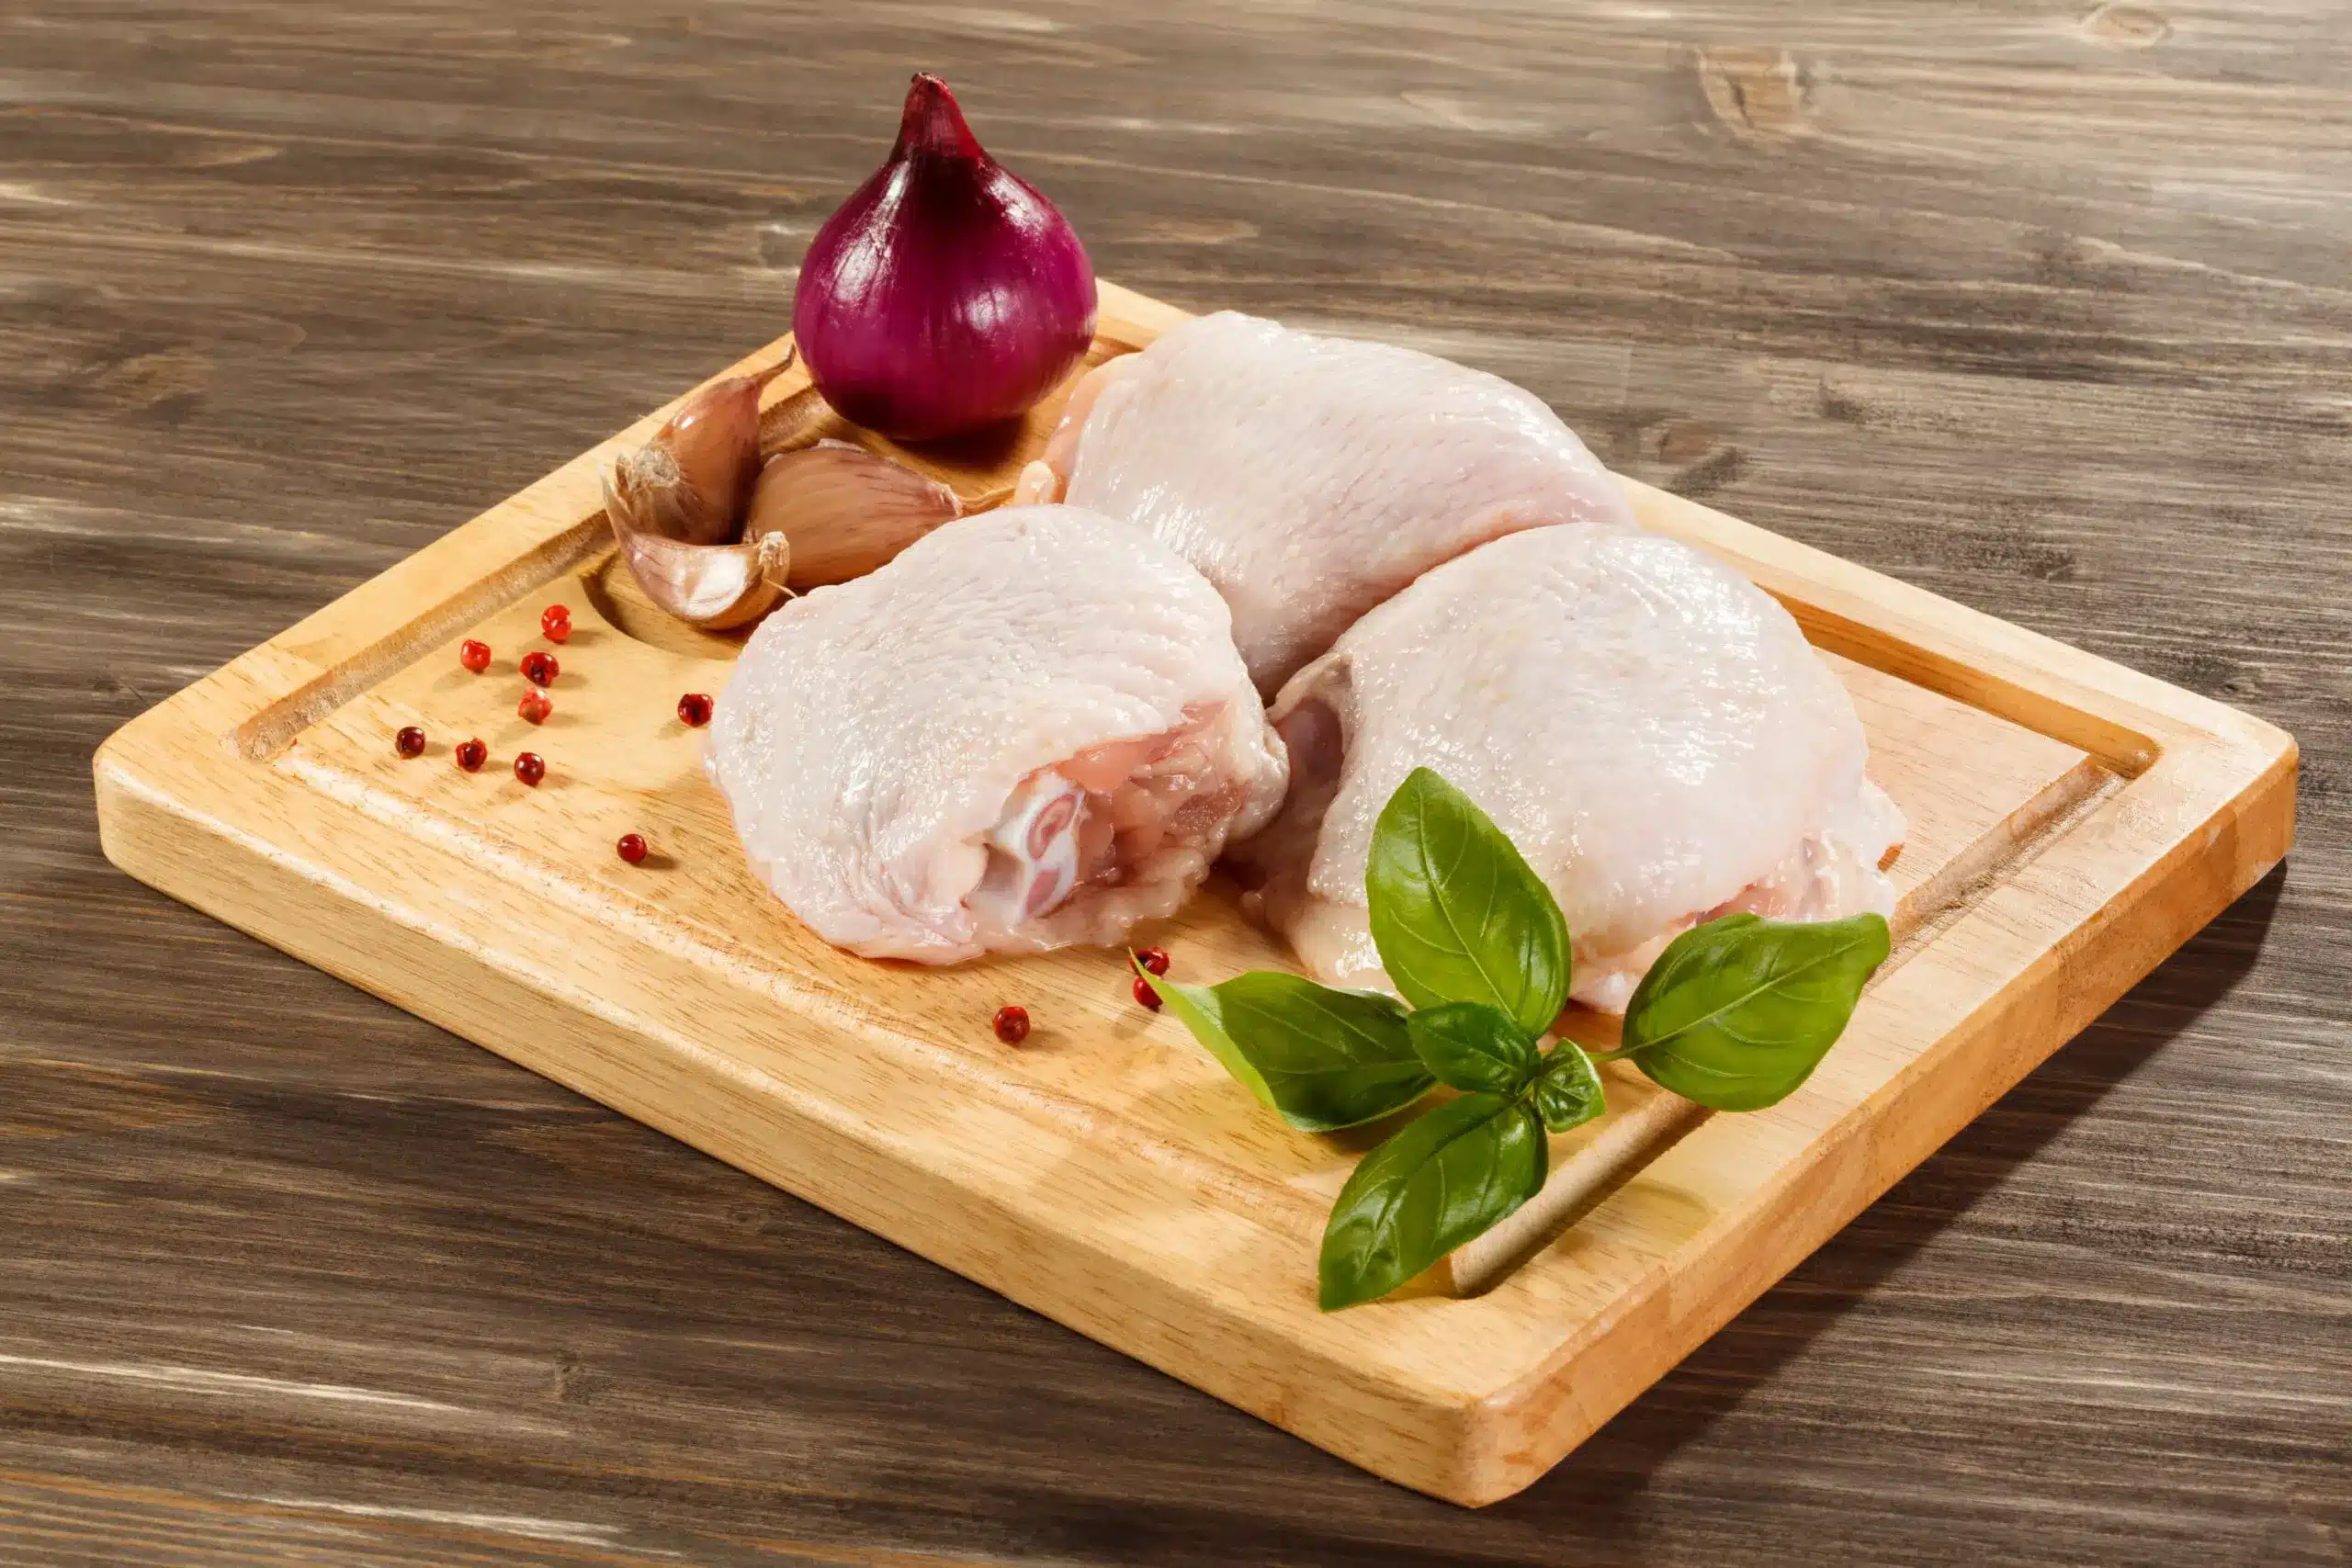 O incrivel crescimento da industria de Aves Por que o frango se tornou a carne mais popular do mundo